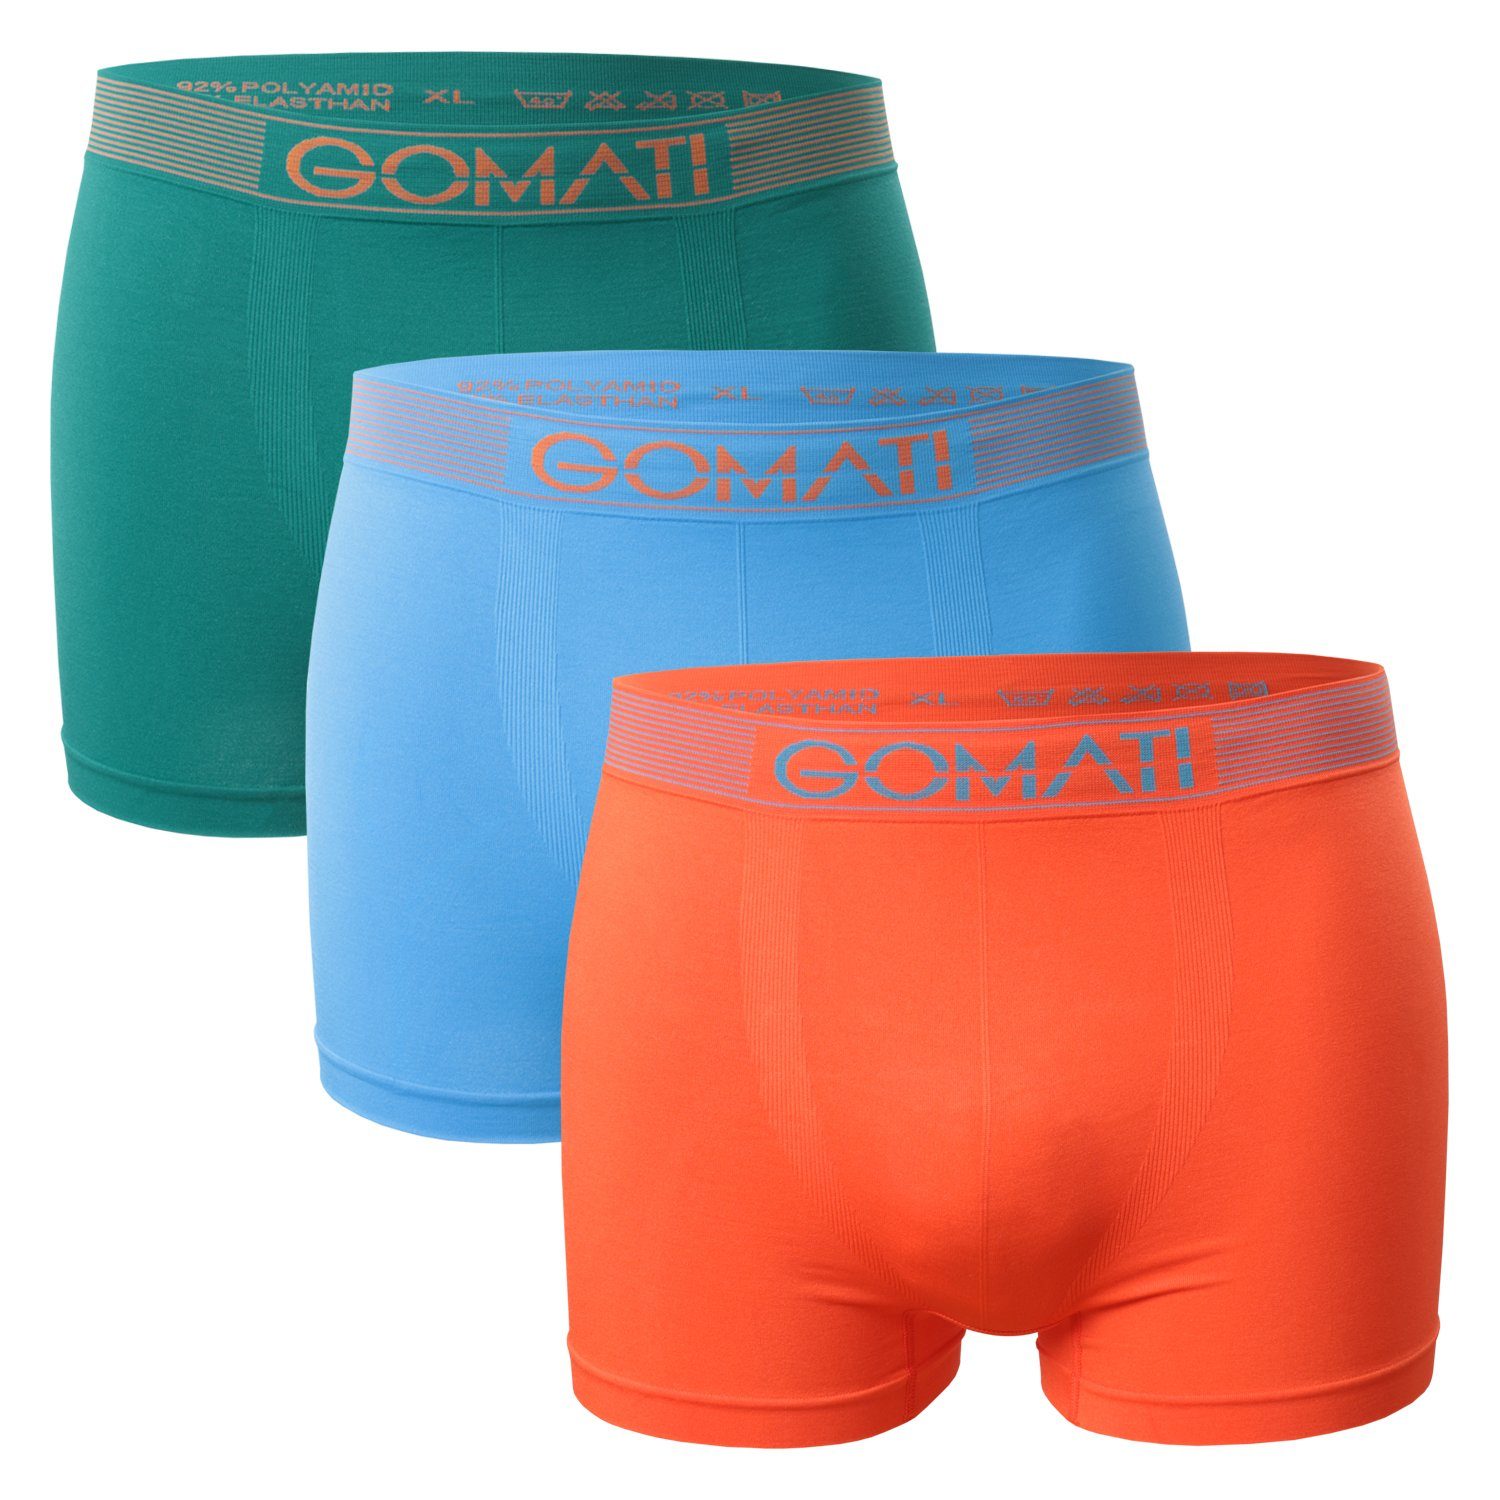 Gomati Boxershorts Herren Seamless Pants (3er Pack) Microfaser-Elasthan Boxershorts Petrol / Orange / Azure